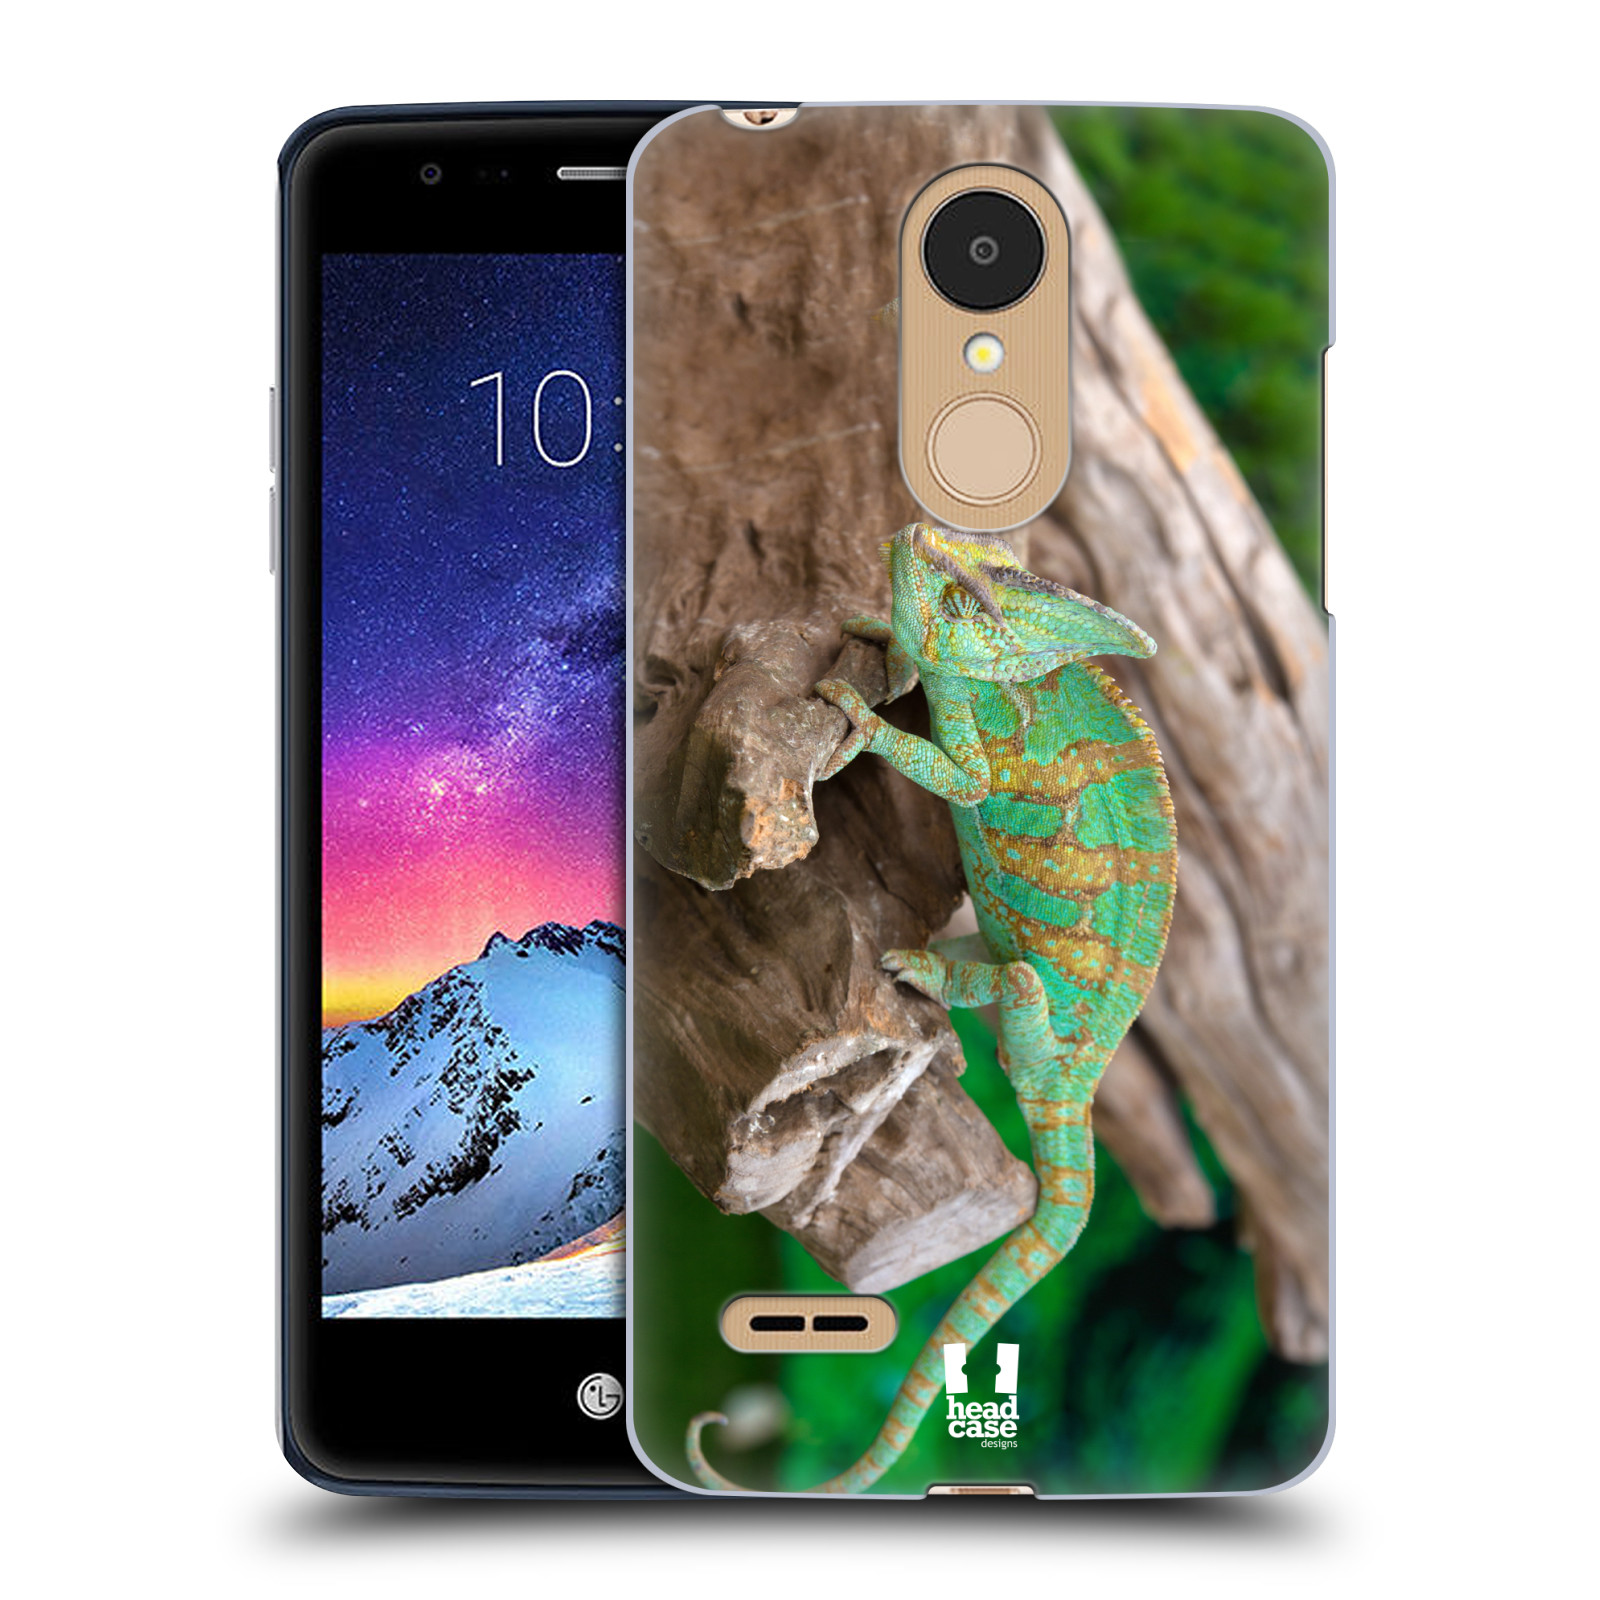 HEAD CASE plastový obal na mobil LG K9 / K8 2018 vzor slavná zvířata foto chameleon